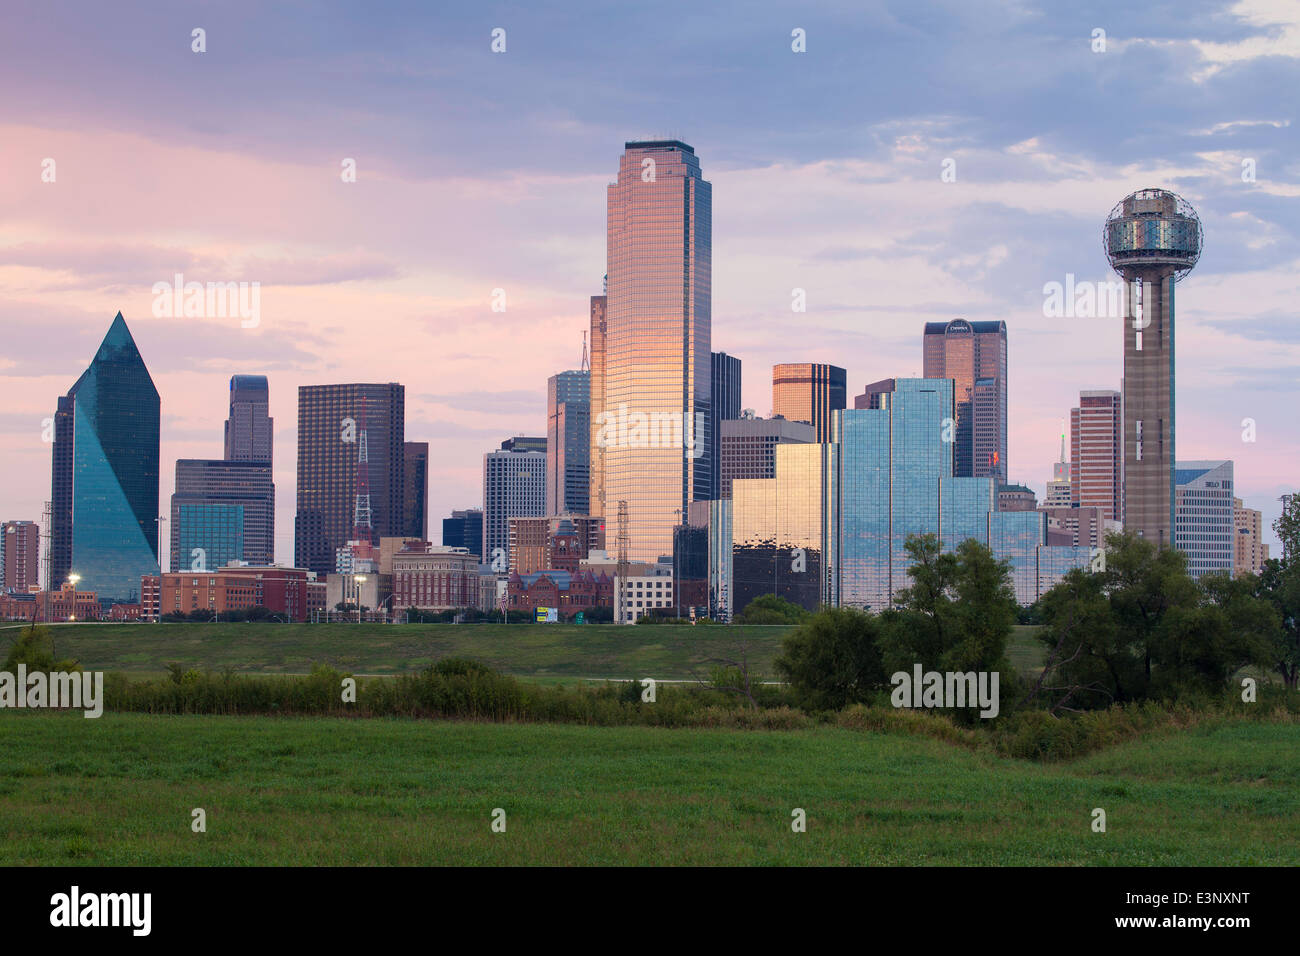 Skyline von Dallas und der Reunion Tower, Texas, Vereinigte Staaten von Amerika Stockfoto